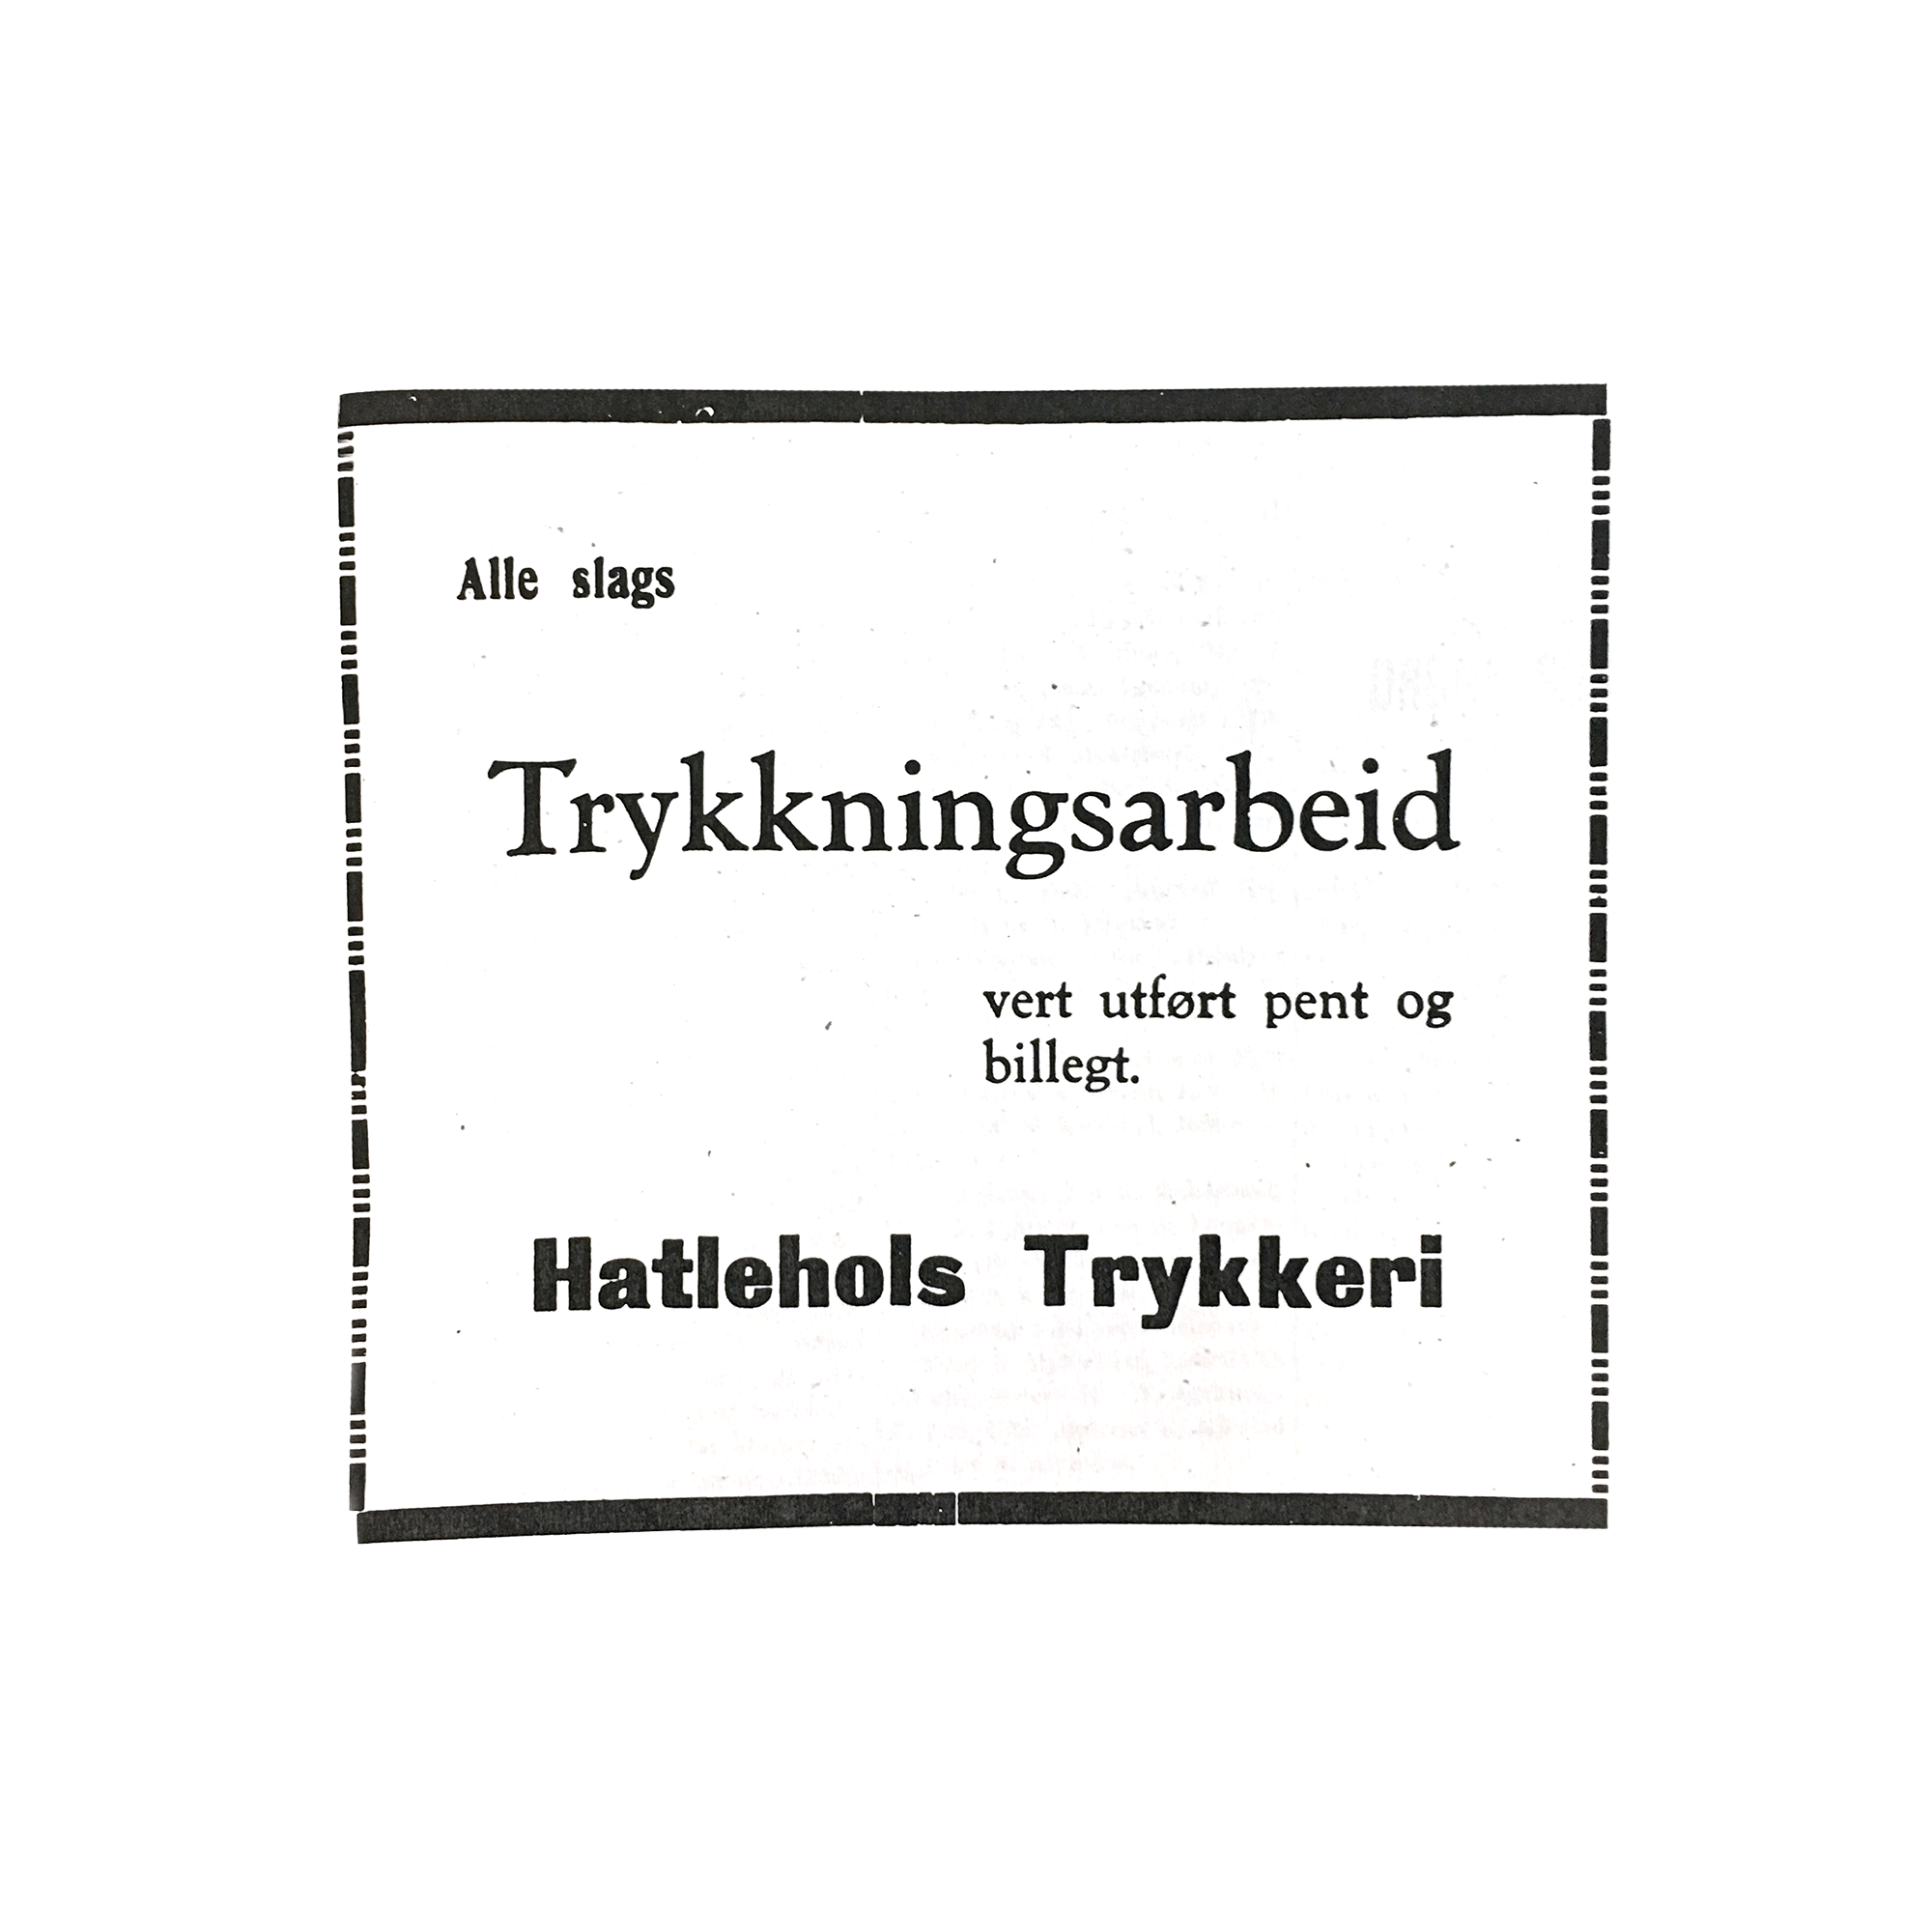 Annonse for Hatlehols i første utgave av Møre Bygdeblad i 1933